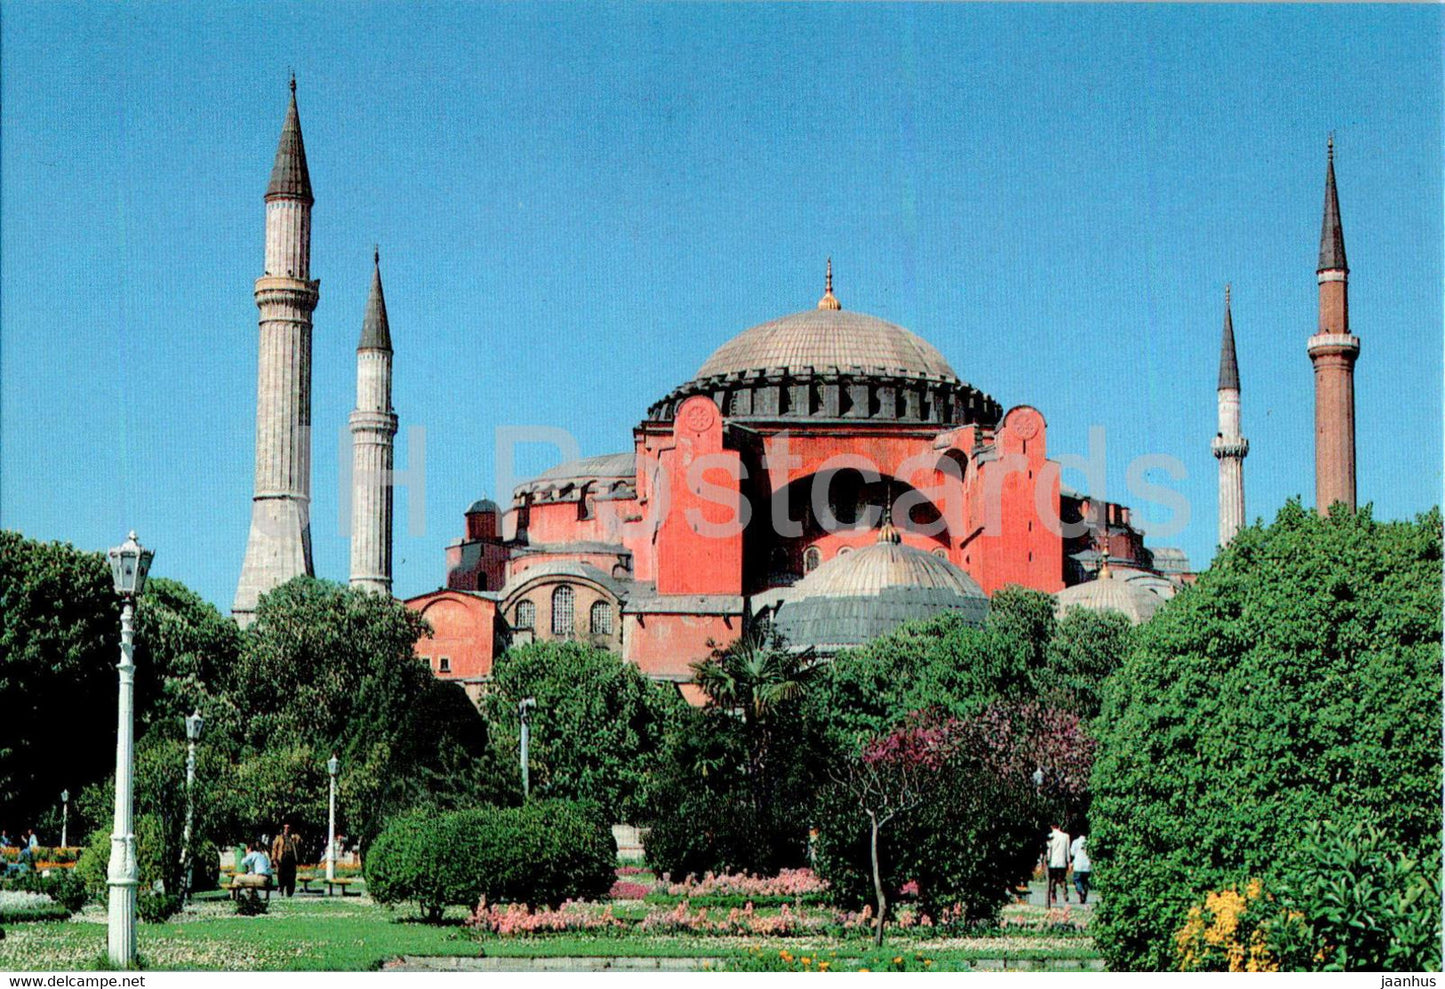 Istanbul - St Sophia Museum - 34-1 - Turkey - unused - JH Postcards